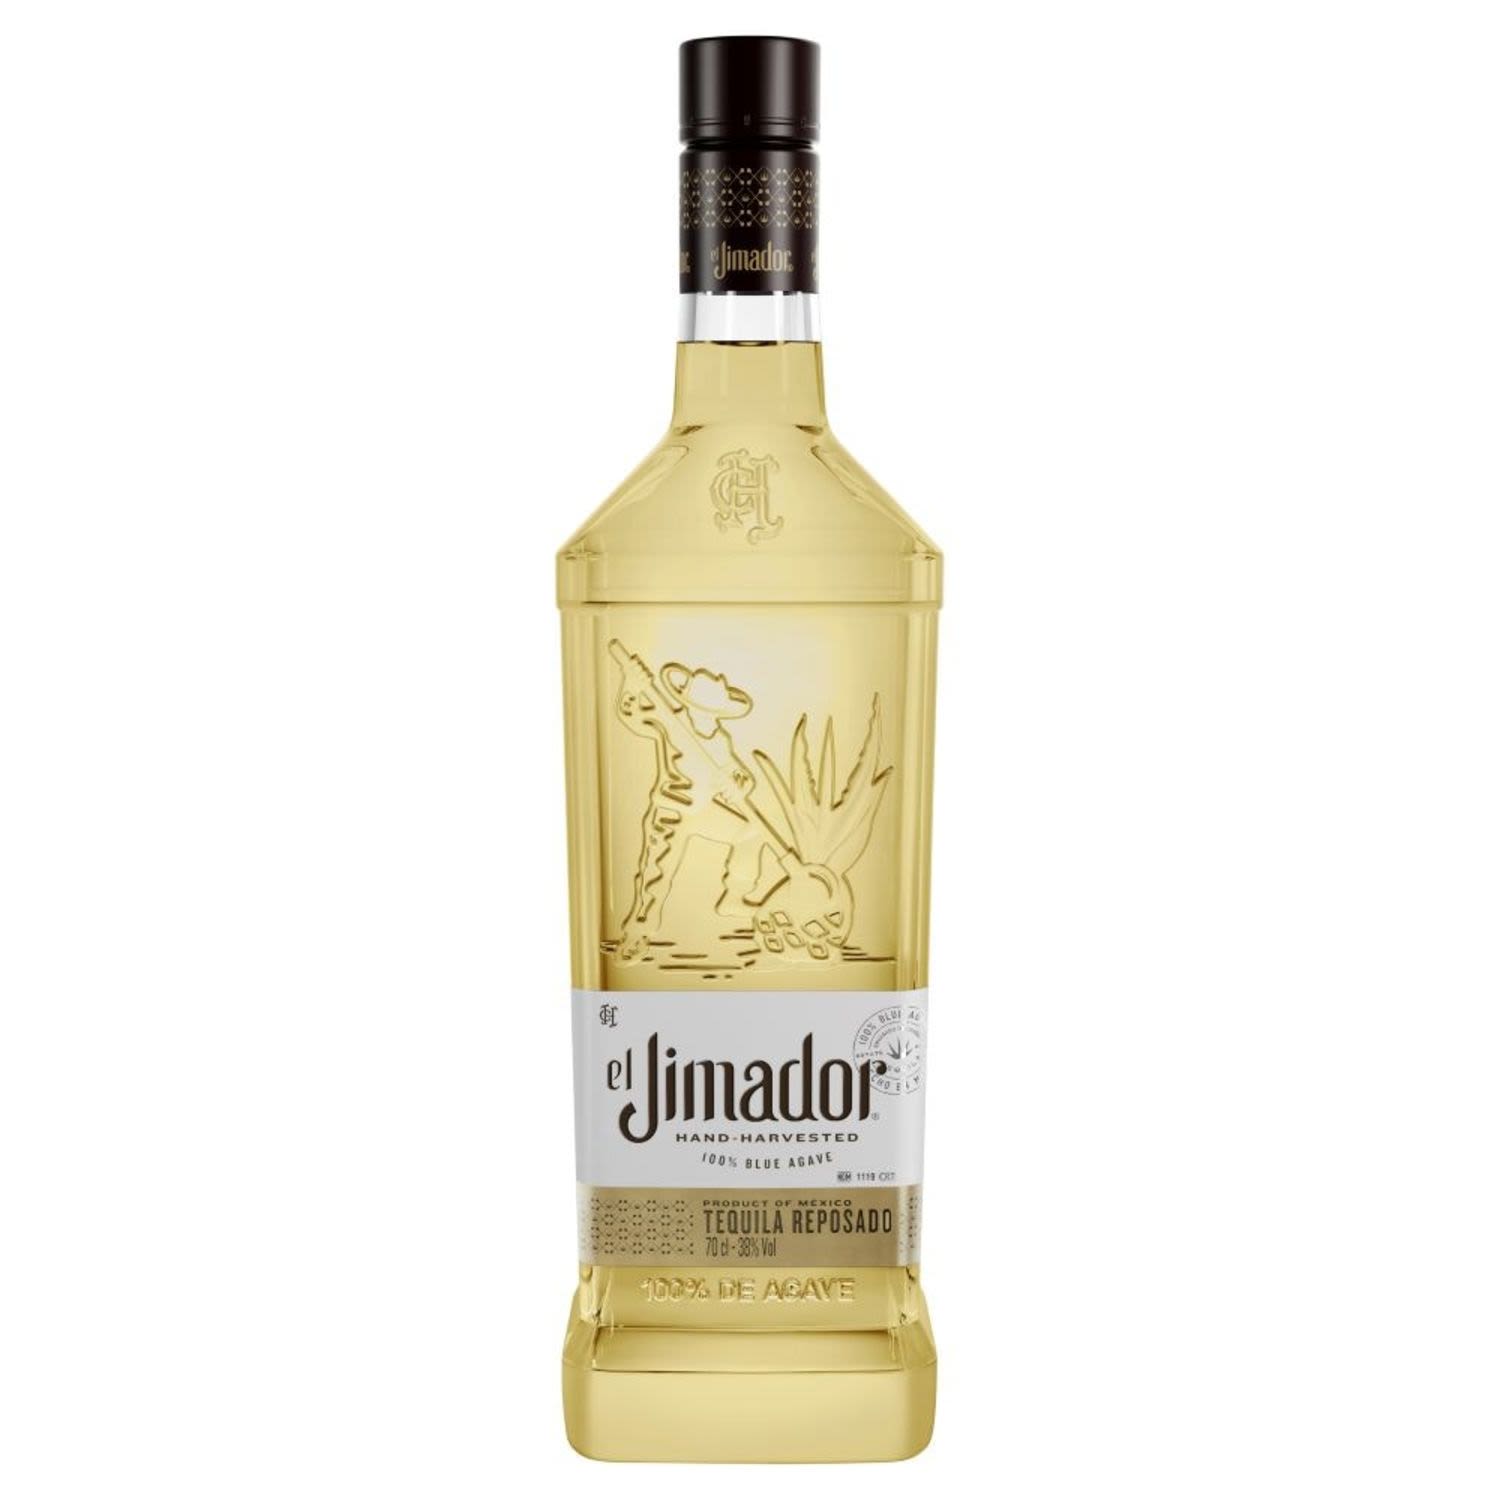 El Jimador Tequila Reposado 700mL<br /> <br />Alcohol Volume: 38.00%<br /><br />Pack Format: Bottle<br /><br />Standard Drinks: 21</br /><br />Pack Type: Bottle<br />